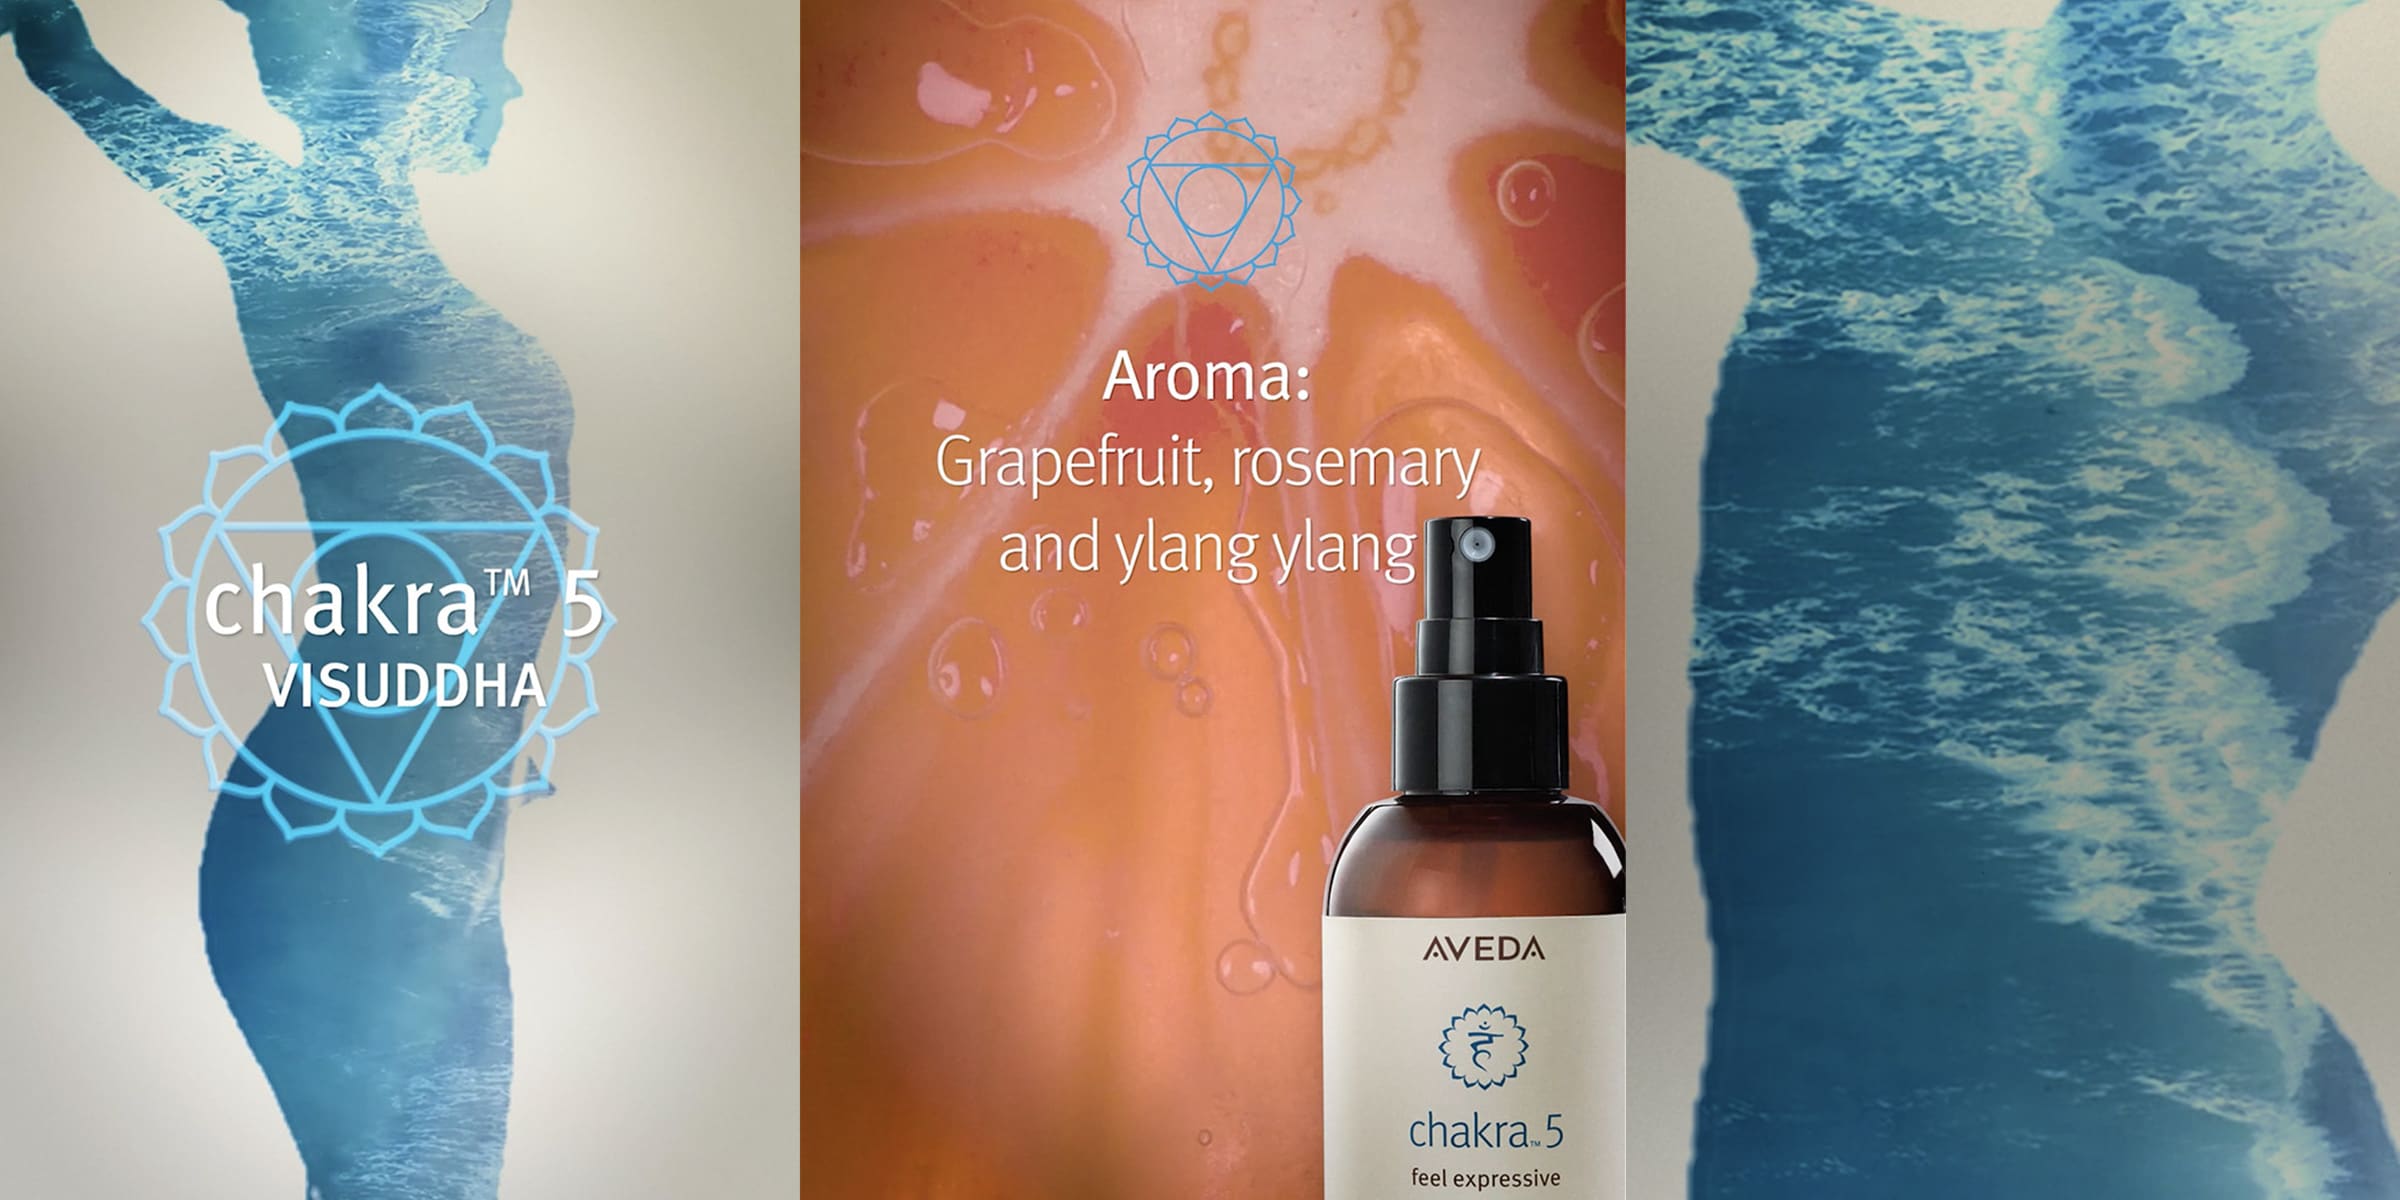 Das Aroma von Chakra 5 umfasst Grapefruit, Rosmarin und Ylang Ylang